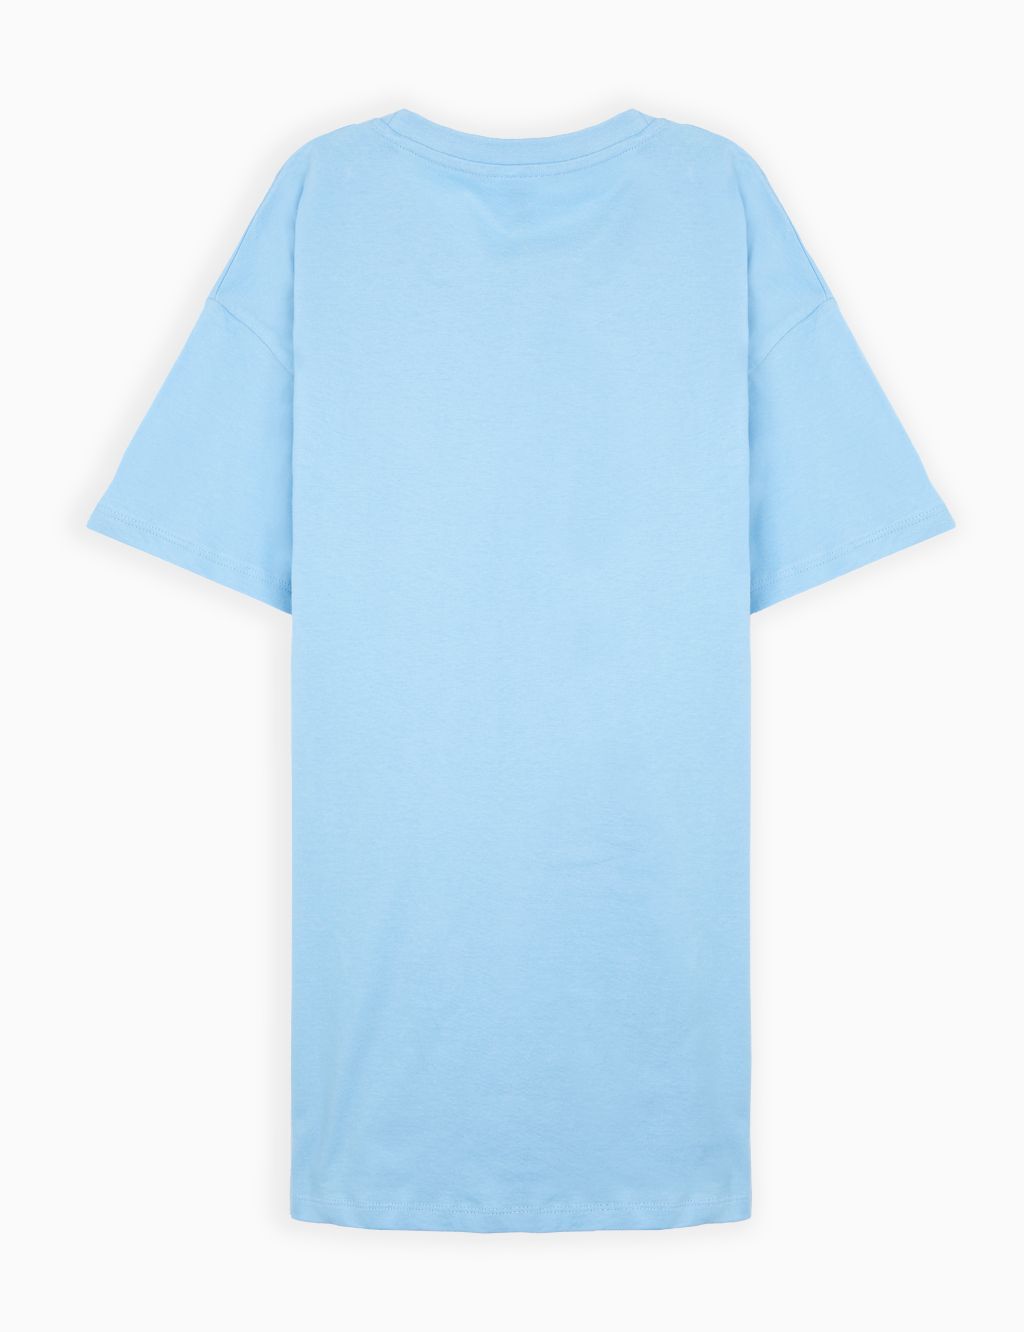 Personalised Original T-Shirt for Men image 2